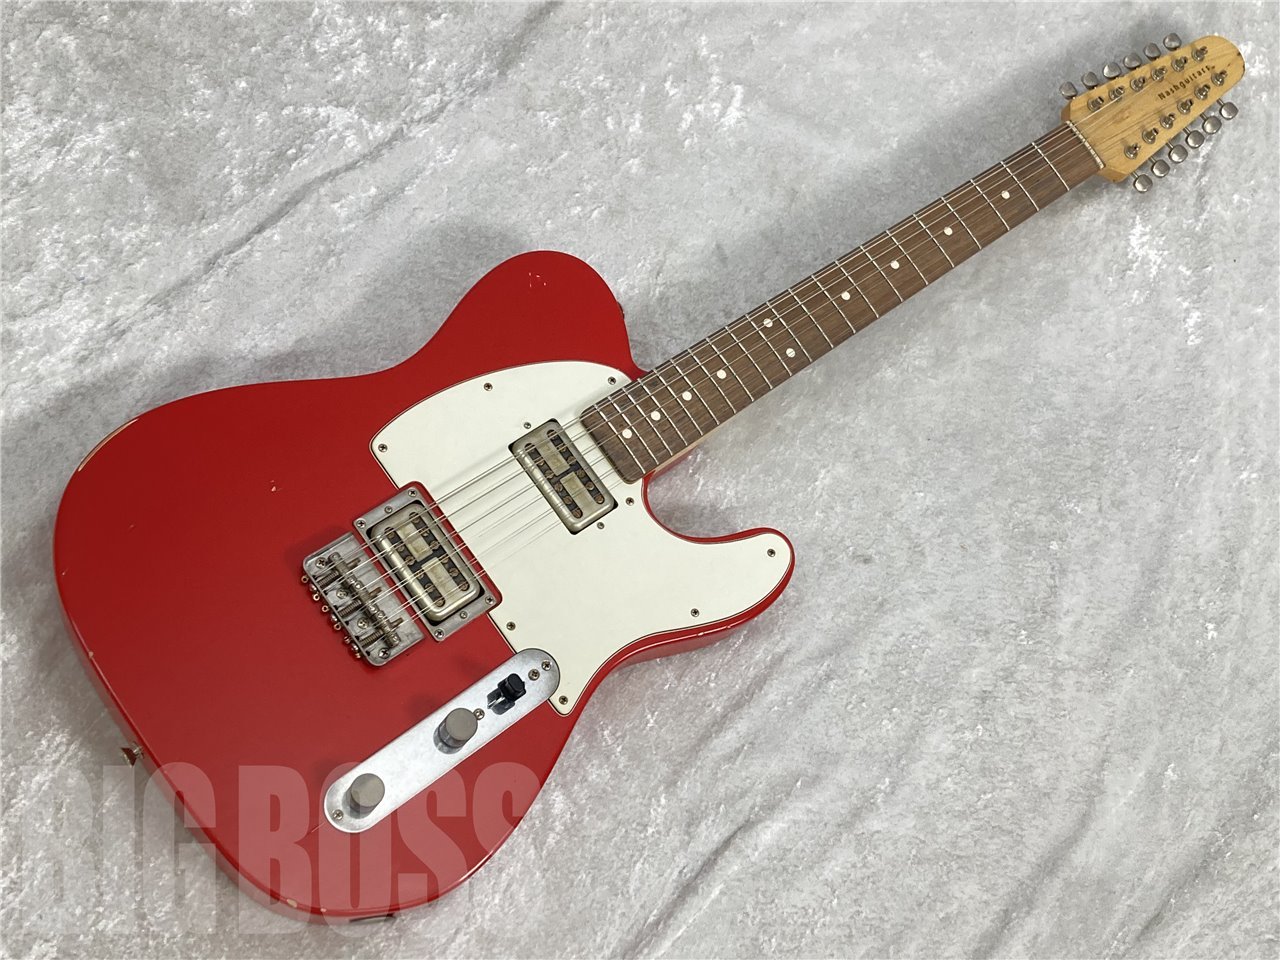 Nash Guitars(ナッシュギターズ) T2HB/12(Dakota Red) #NG5457 駅前別館